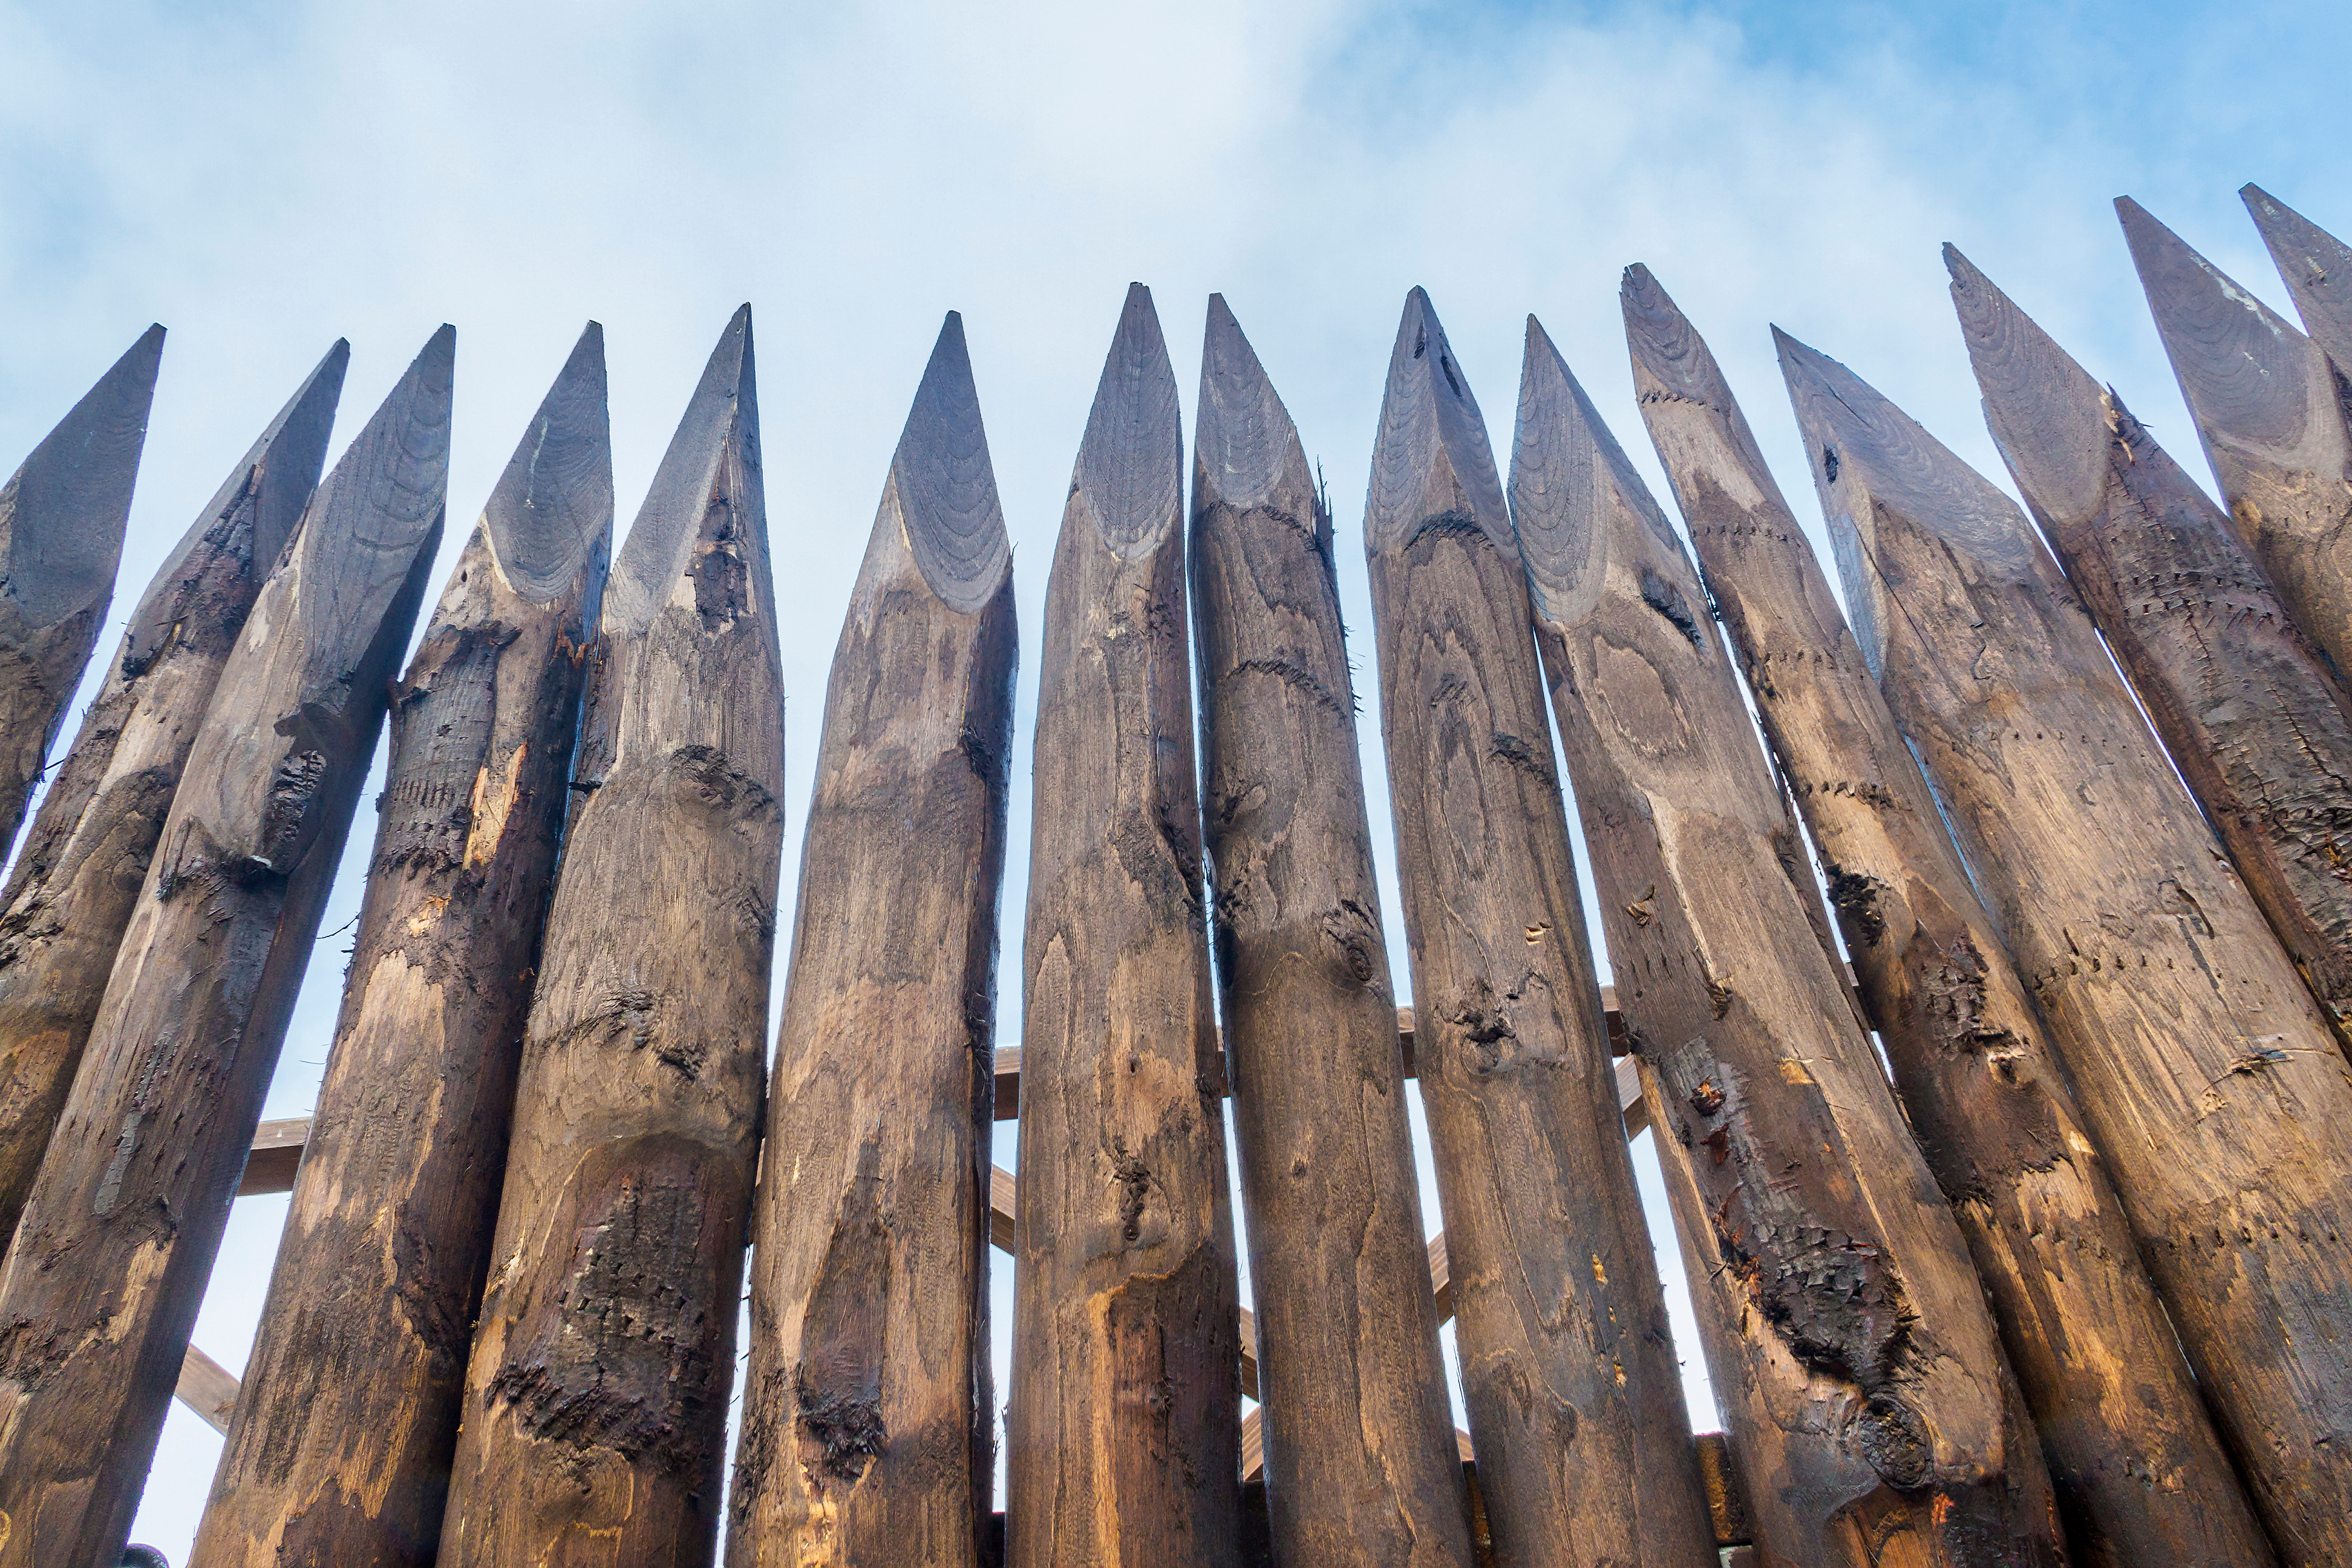 La découverte de pieux en bois révèle un système de fortifications sophistiqué © Arousa, Adobe Stock